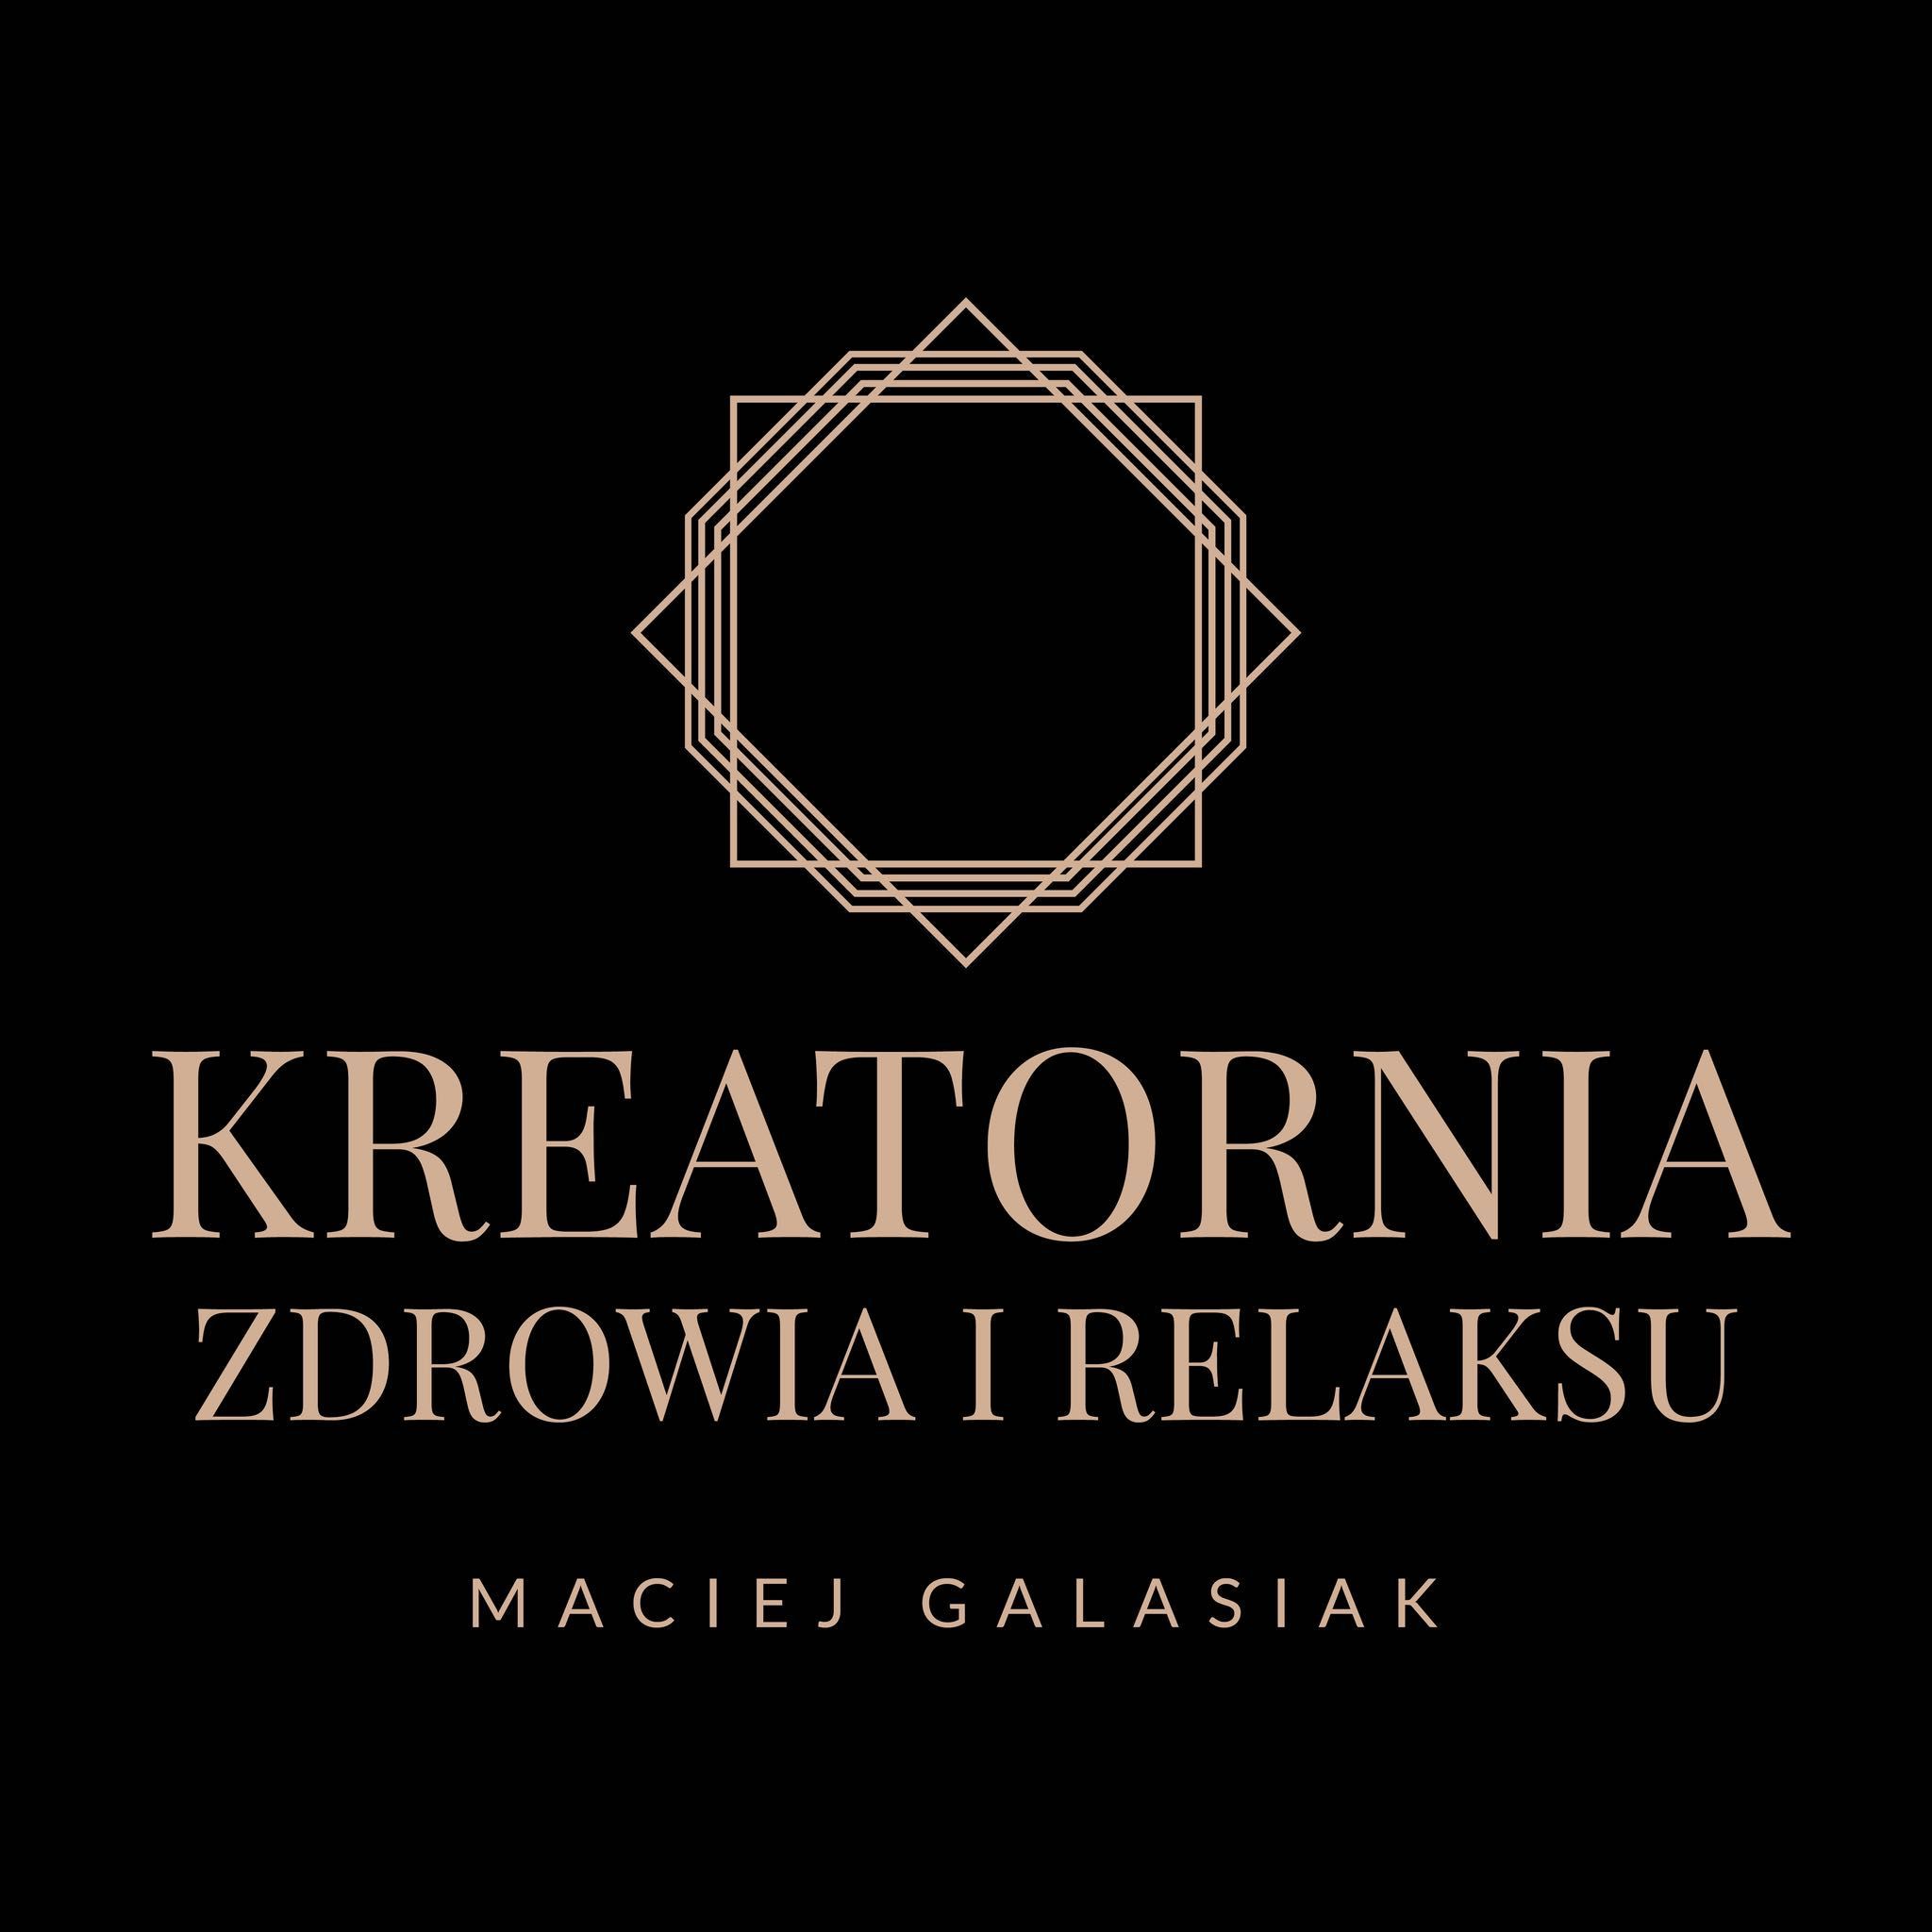 Kreatornia Zdrowia i Relaksu, Żurawia 20A, 5, 00-515, Warszawa, Śródmieście